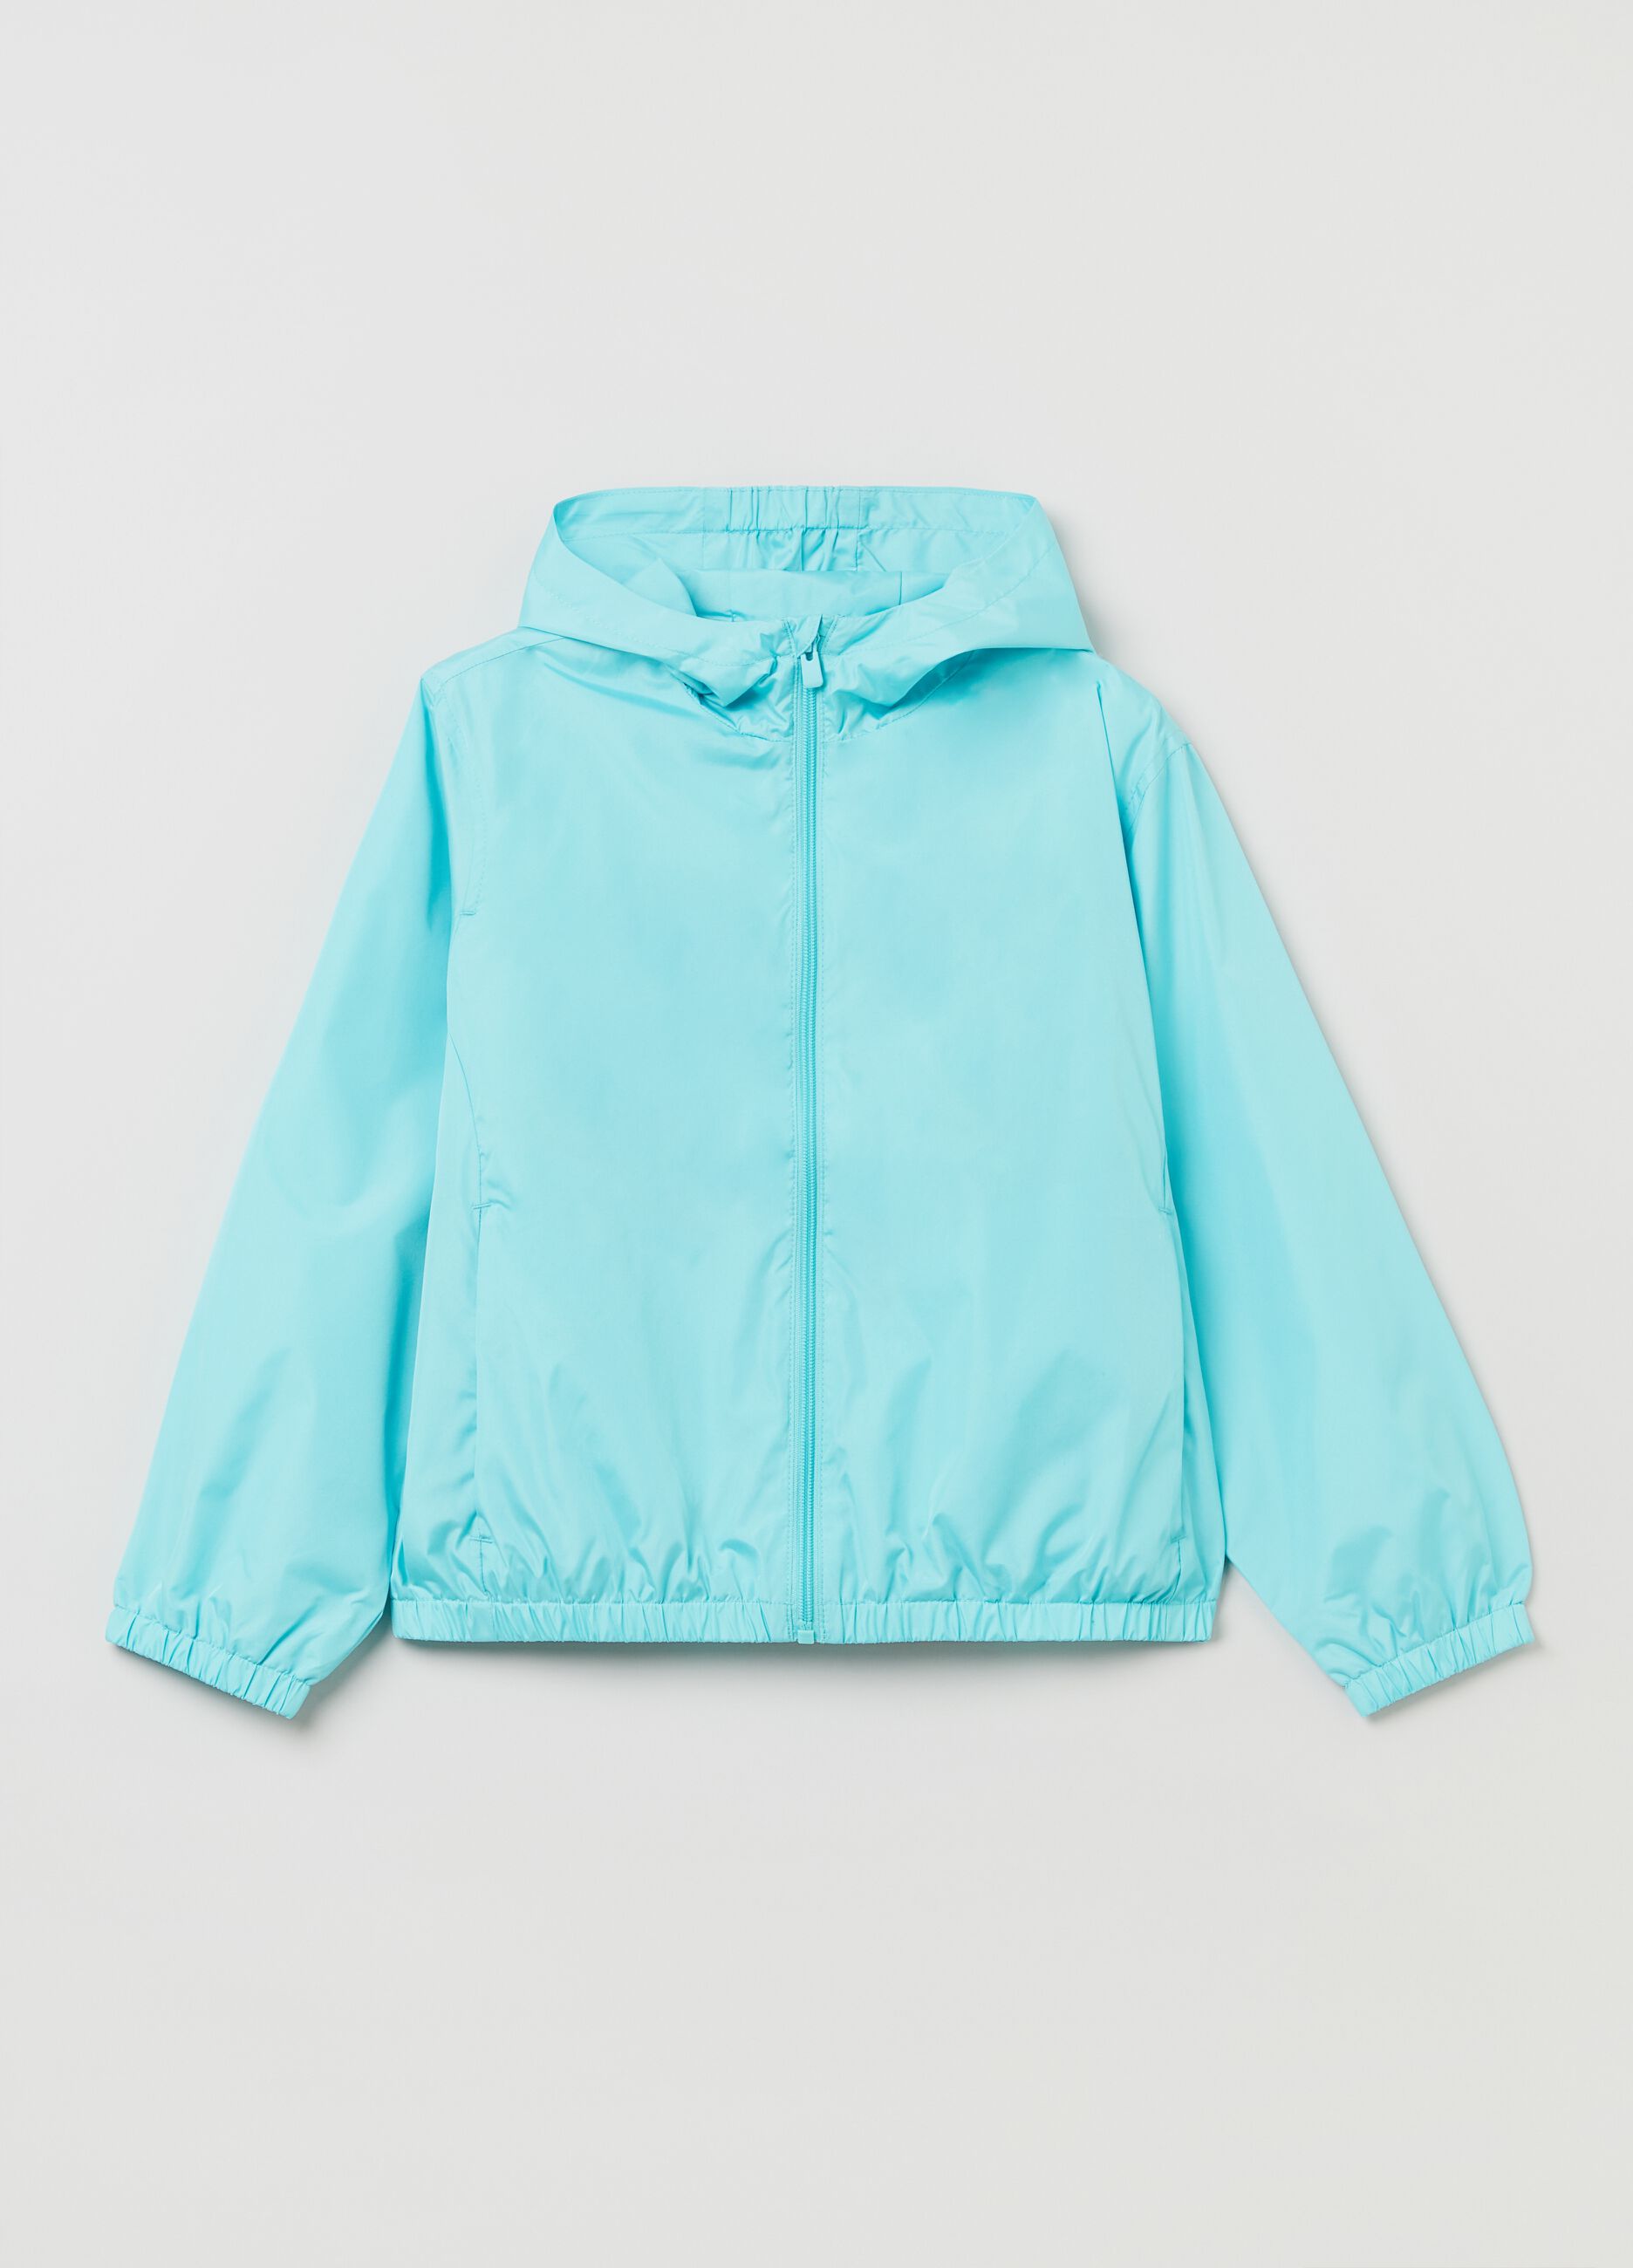 Waterproof jacket with hood